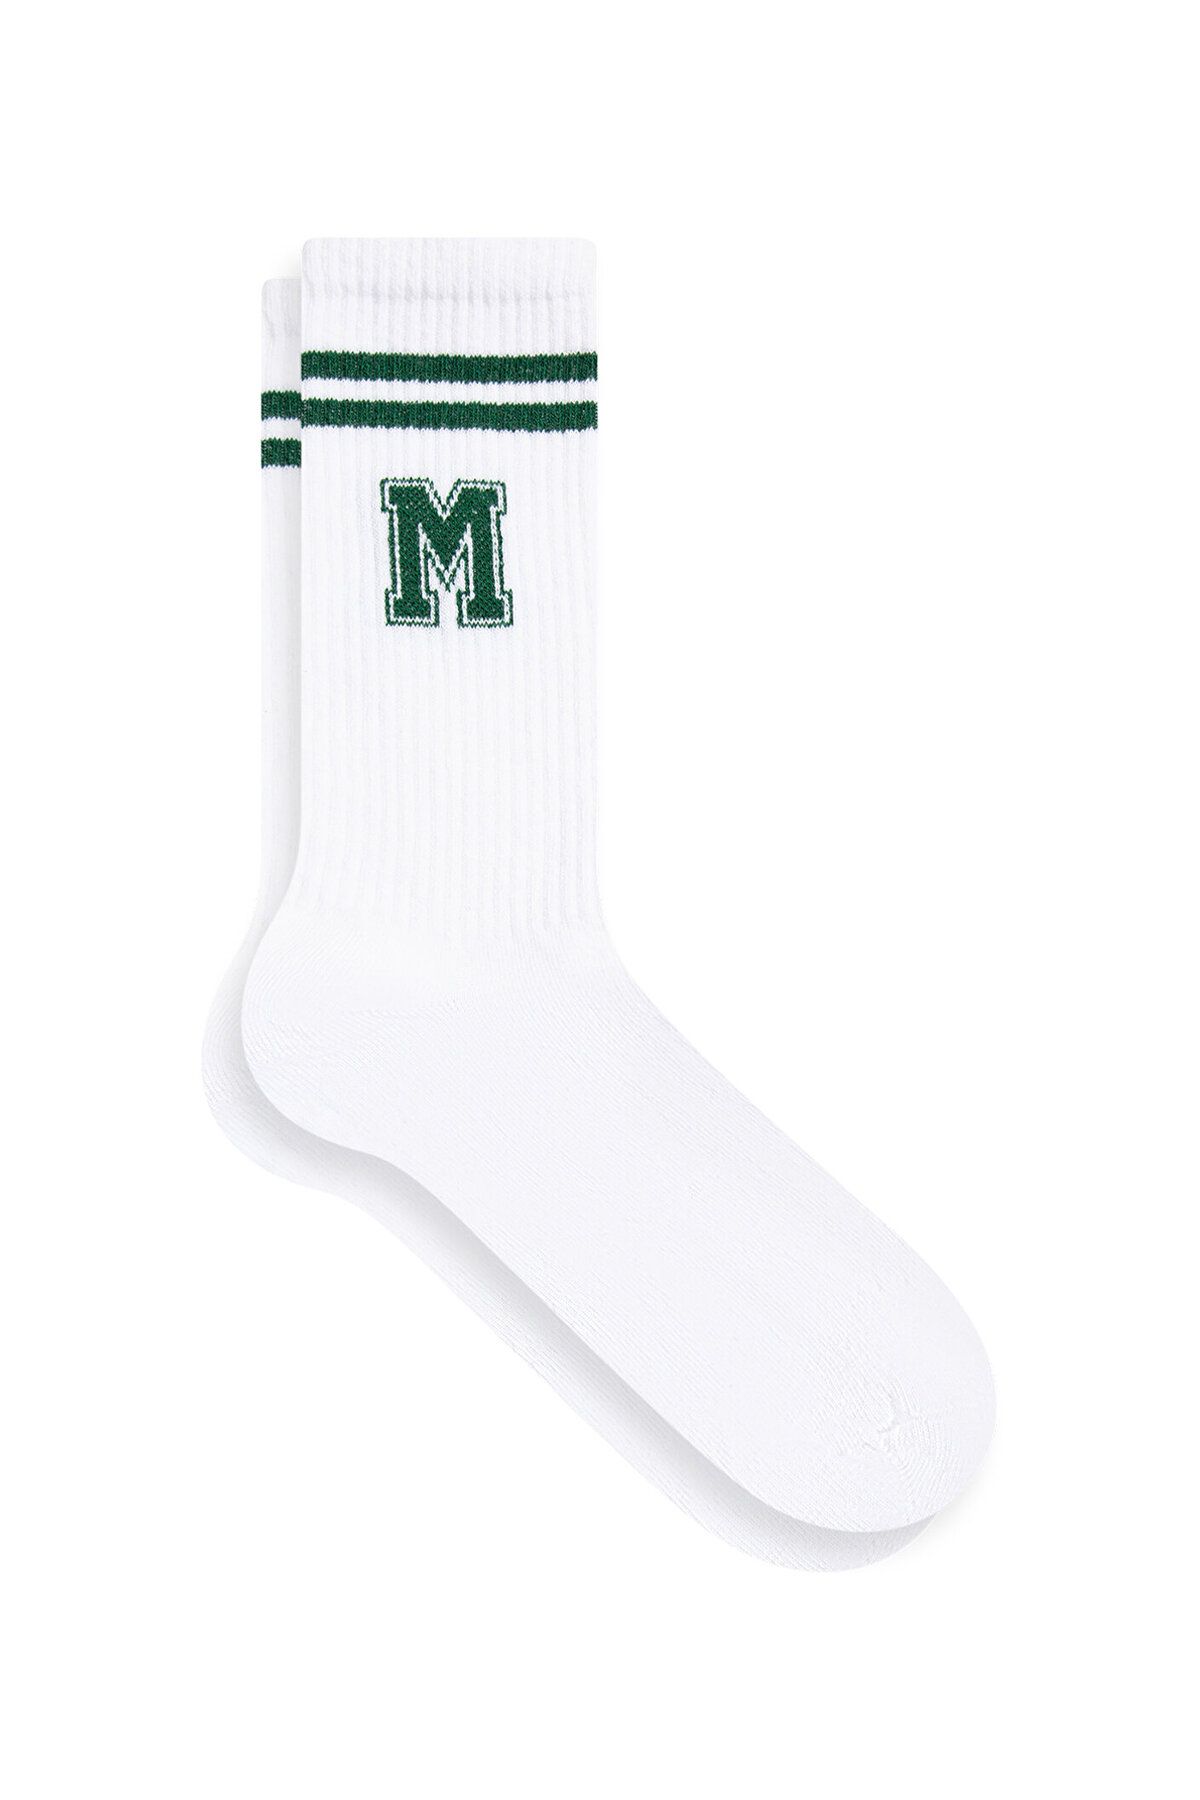 Mavi M Logo Beyaz Soket Çorap 1911870-620